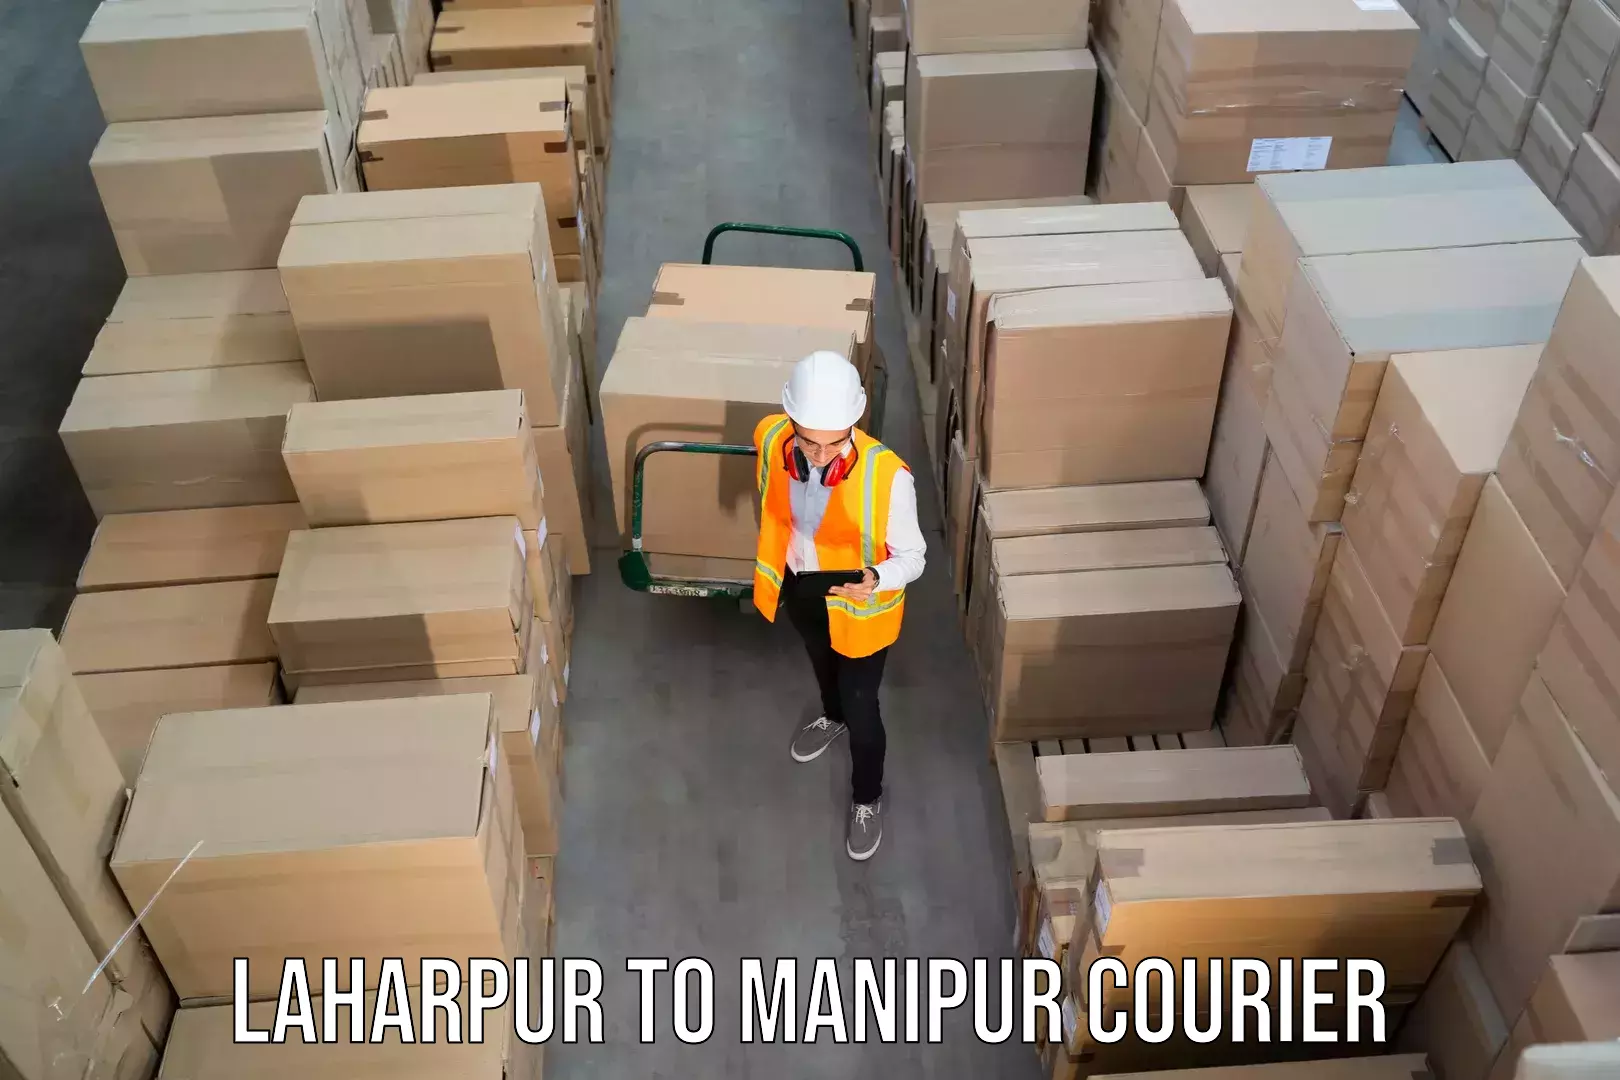 Return courier service Laharpur to Senapati